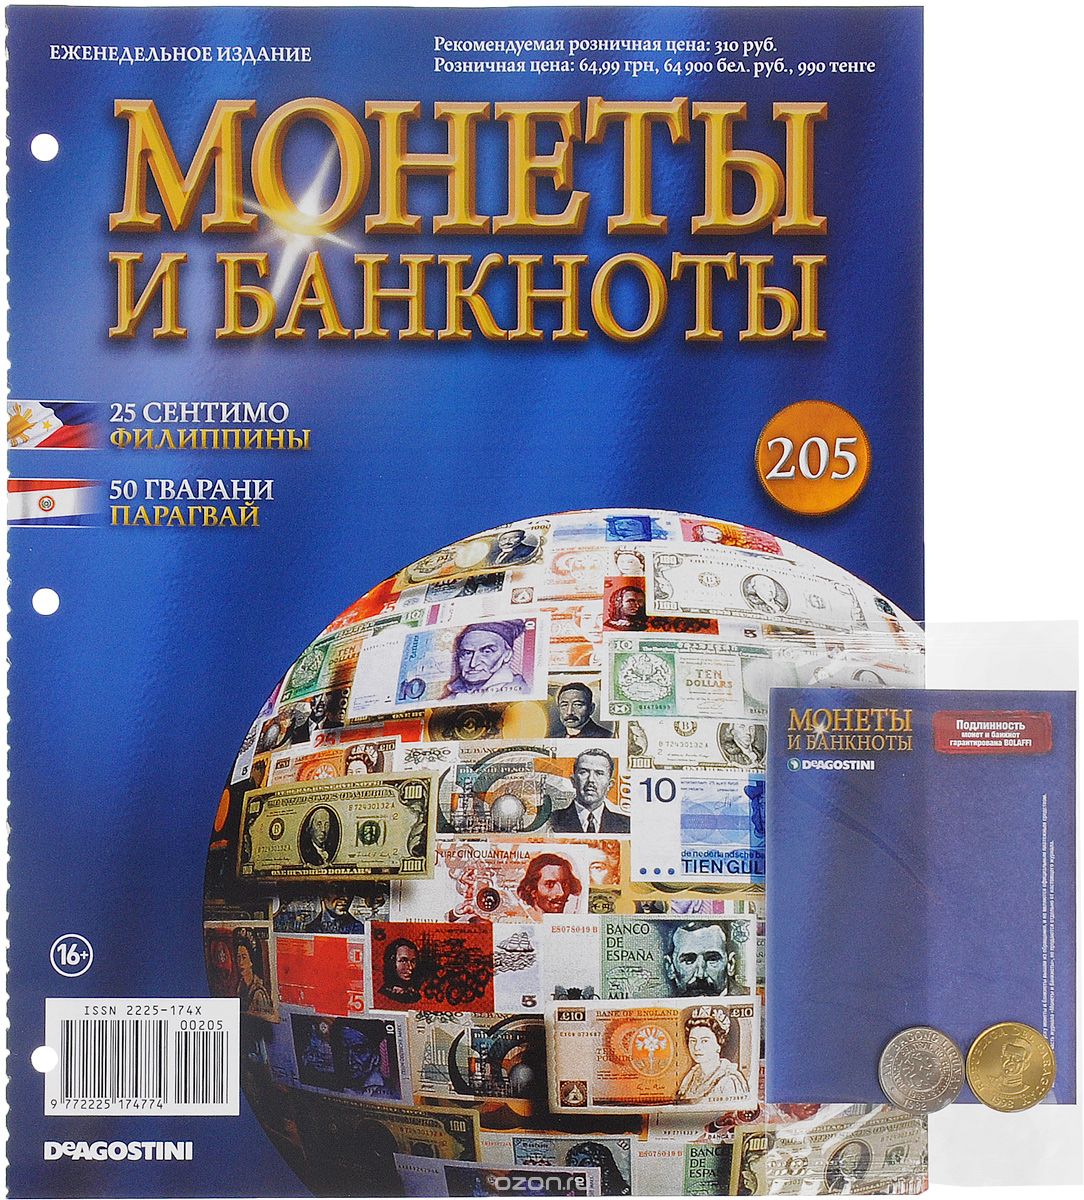 Скачать книгу "Журнал "Монеты и банкноты" №205"